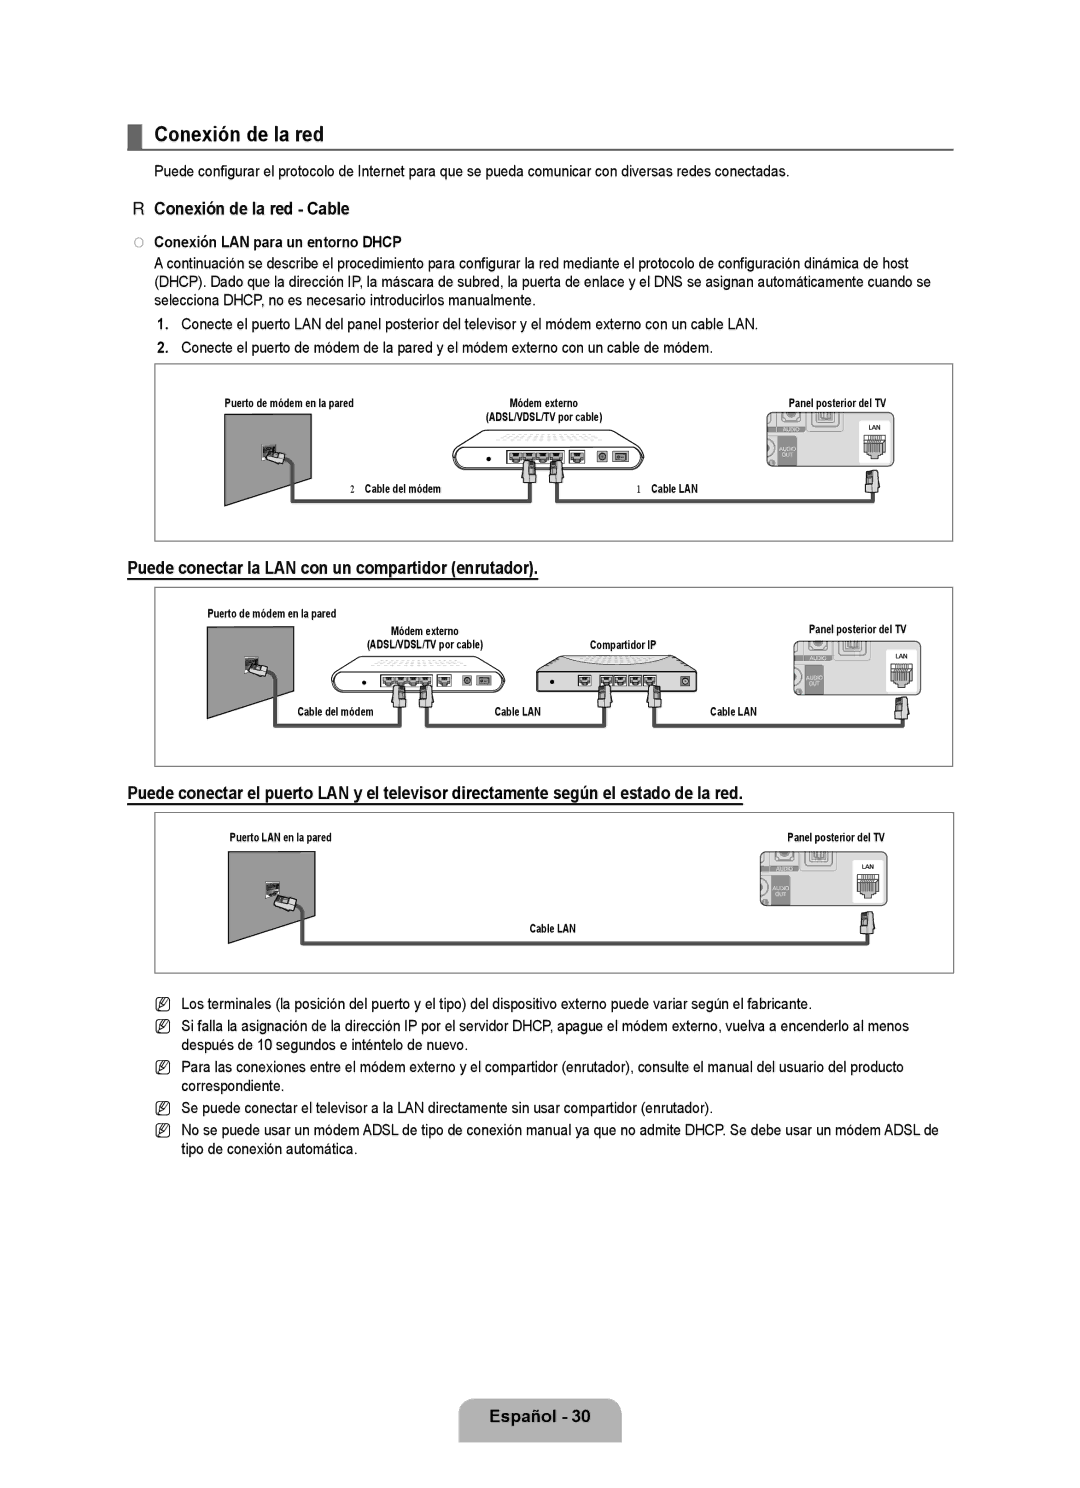 Samsung LN6B60 user manual Conexión de la red Cable, Puede conectar la LAN con un compartidor enrutador 